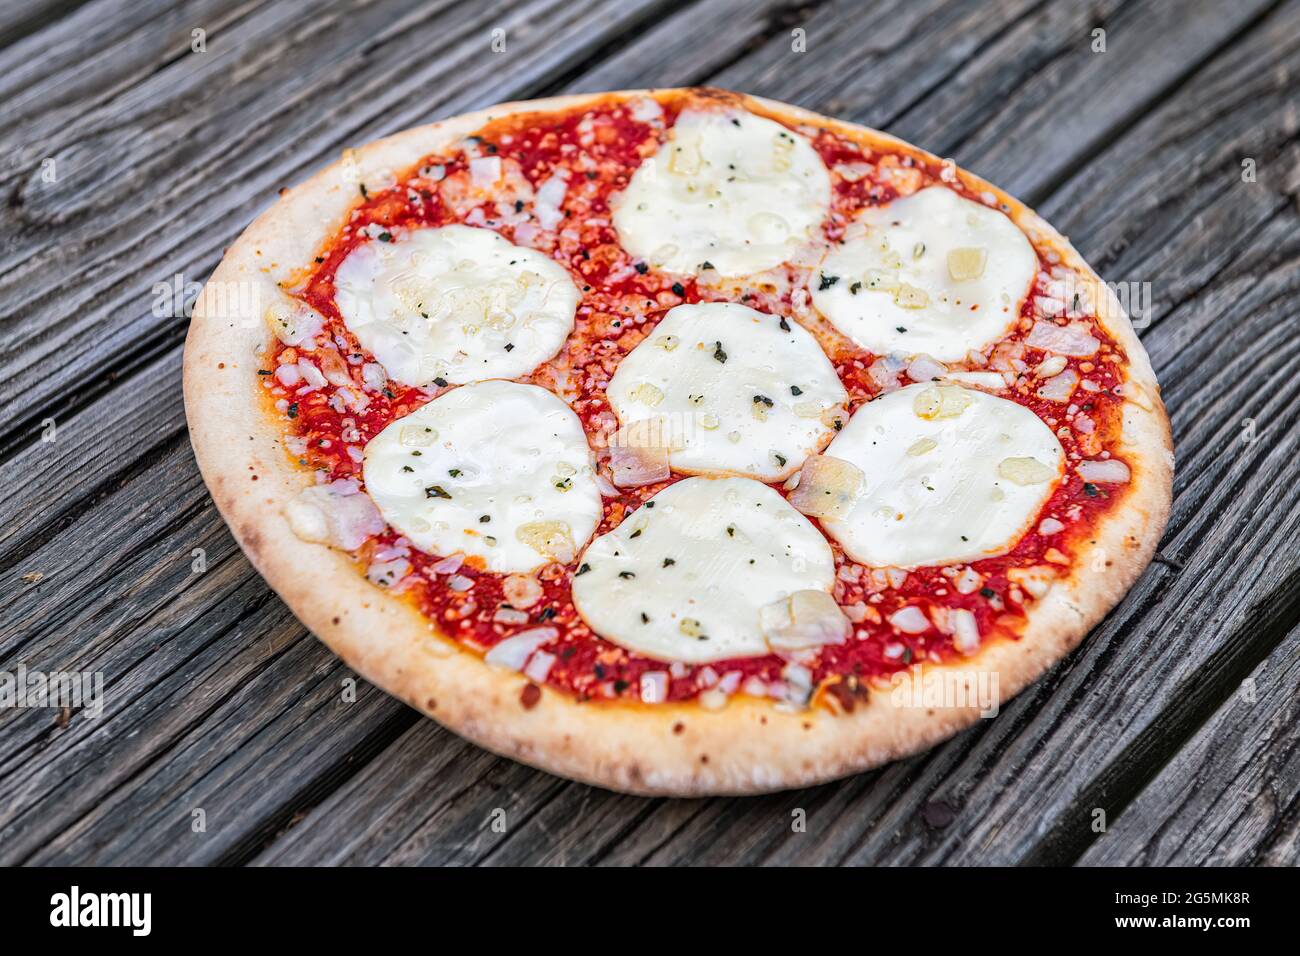 Crostate la pizza intera sul tavolo con mozzarella fusa e cospargete la salsa di pomodoro rosso come cucina italiana Foto Stock